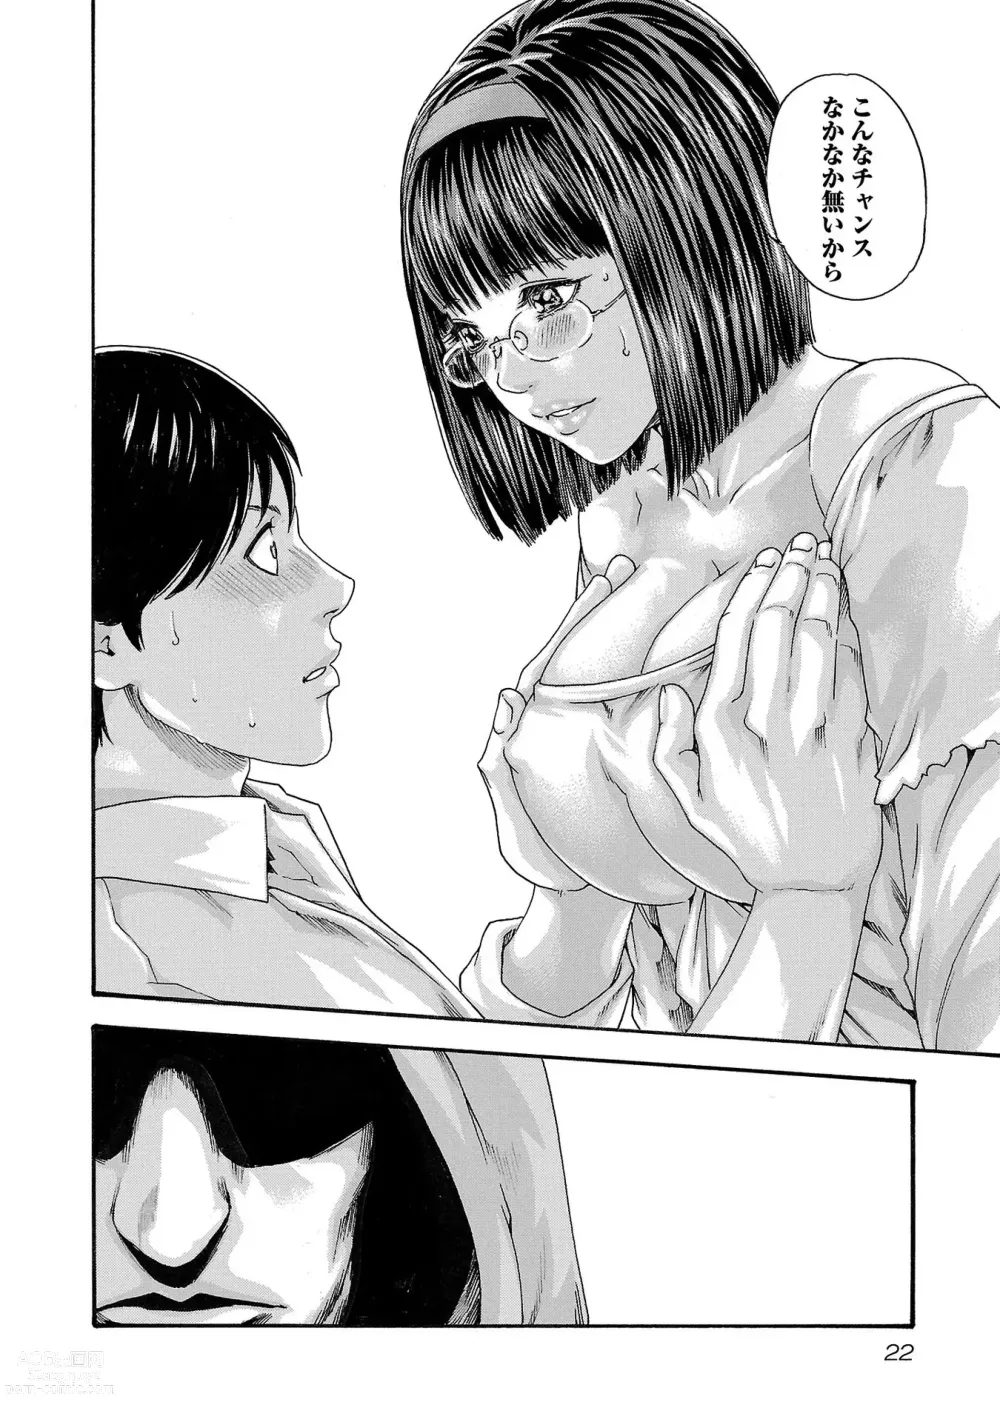 Page 23 of manga sense volume 13